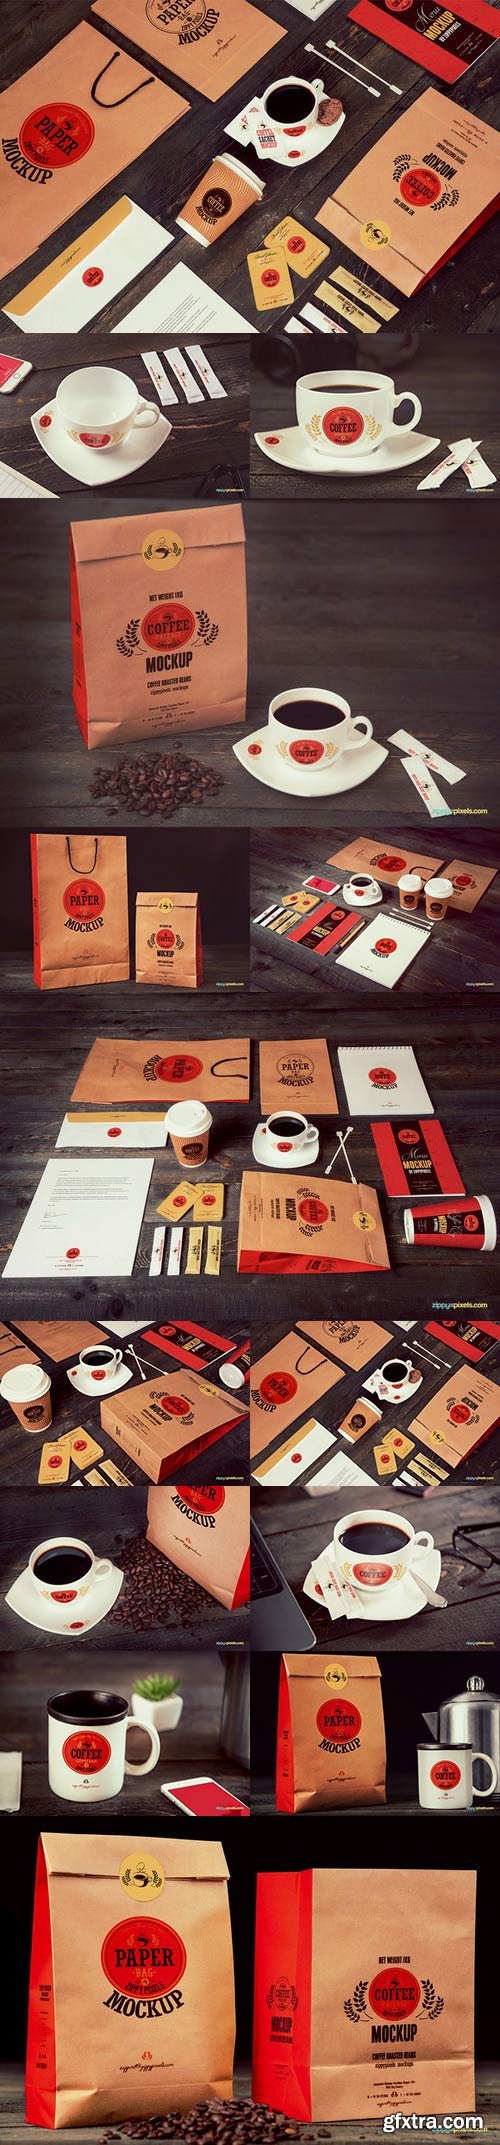 CM - Coffee Branding & Packaging Mockups 561277